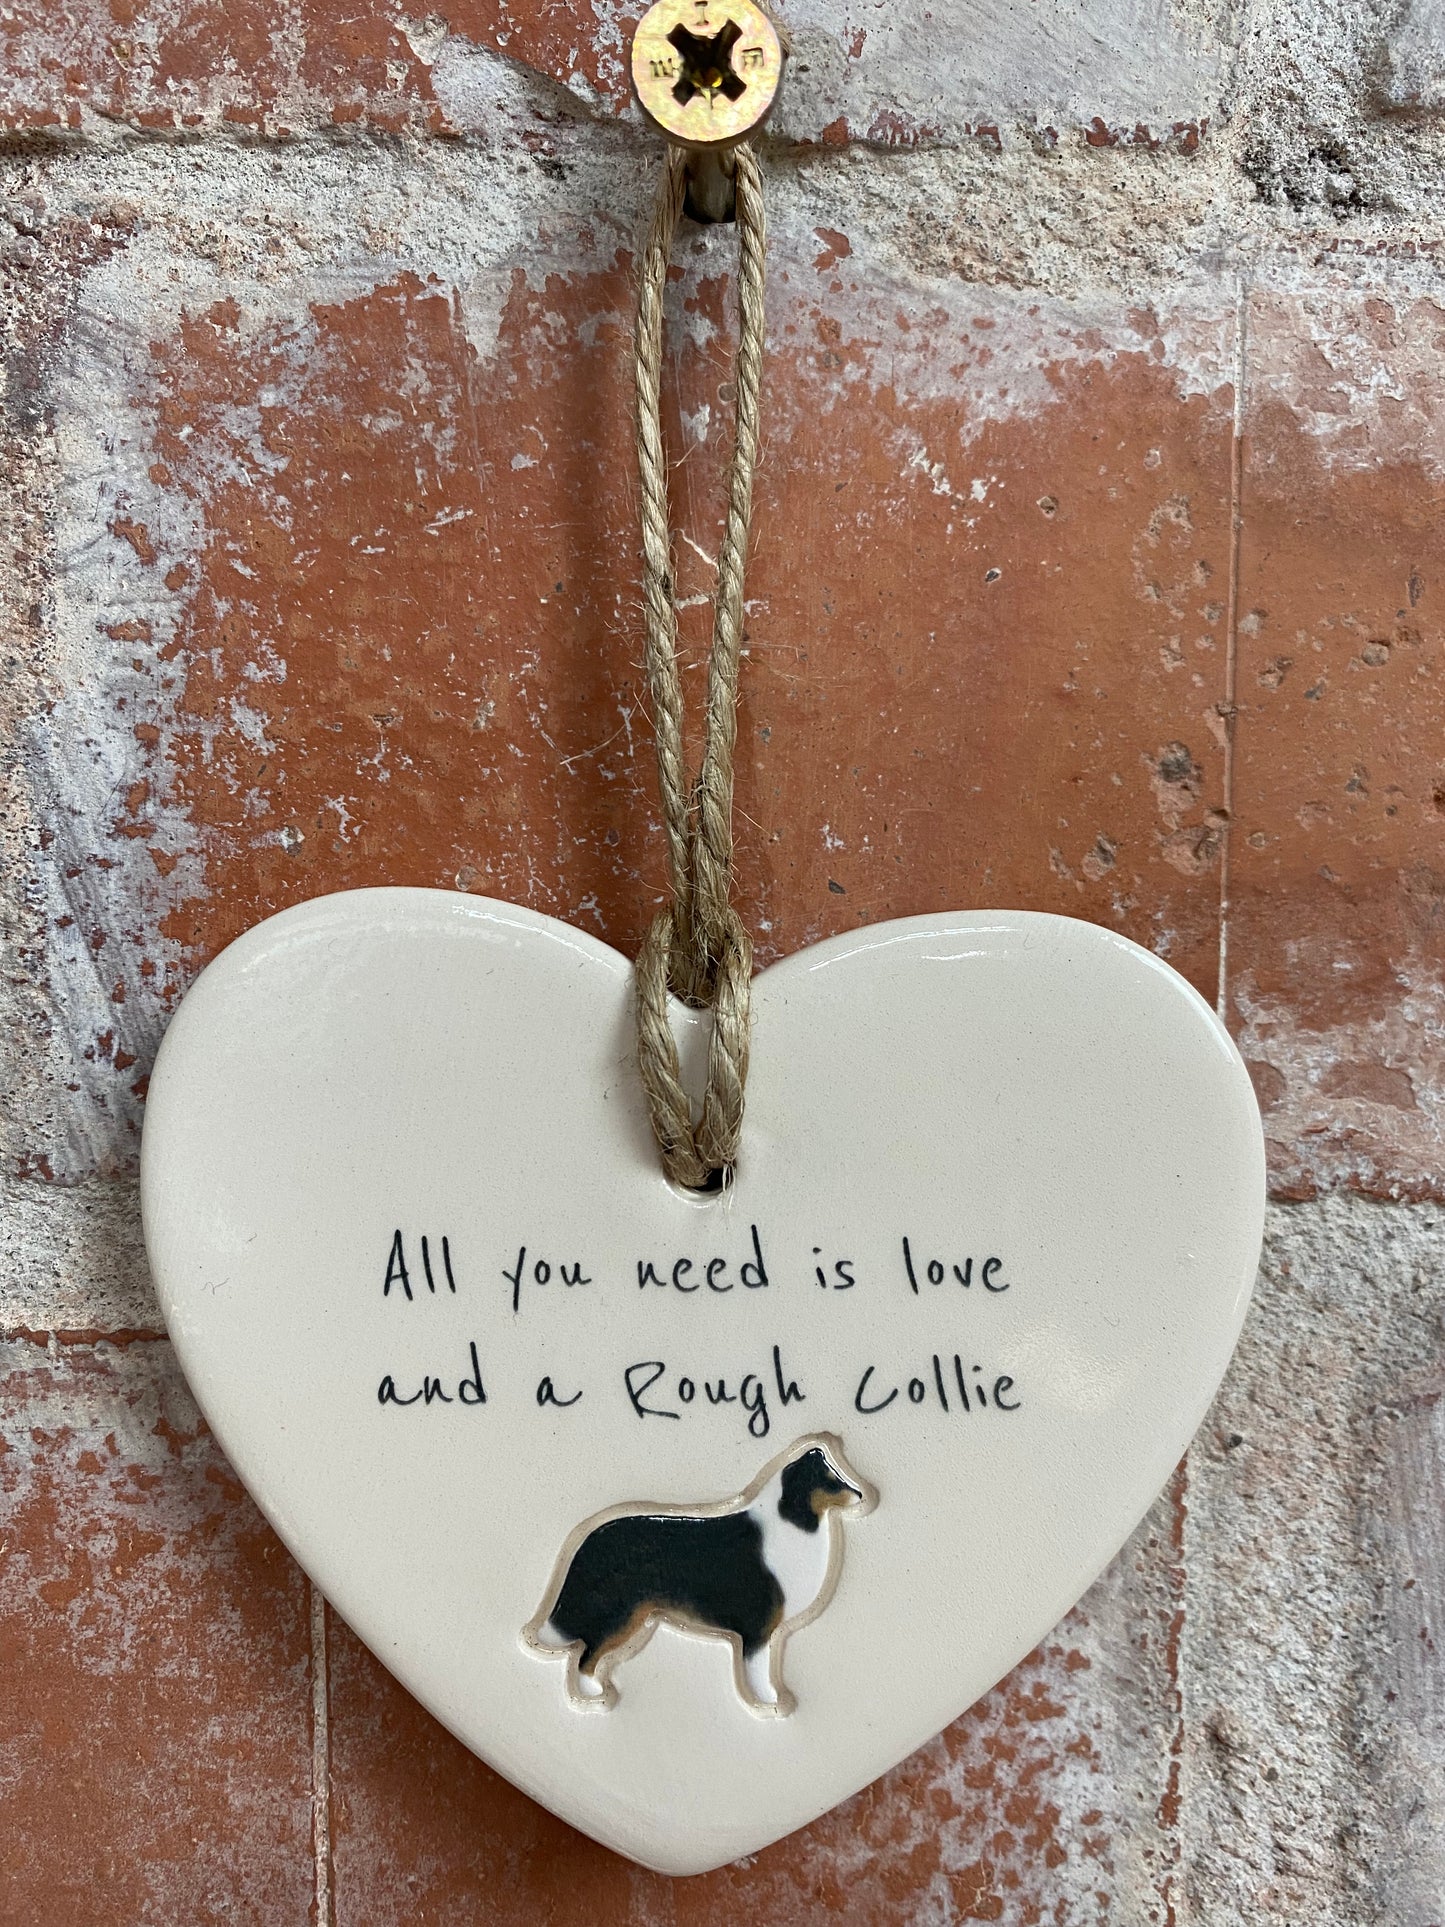 Rough Collie ceramic heart